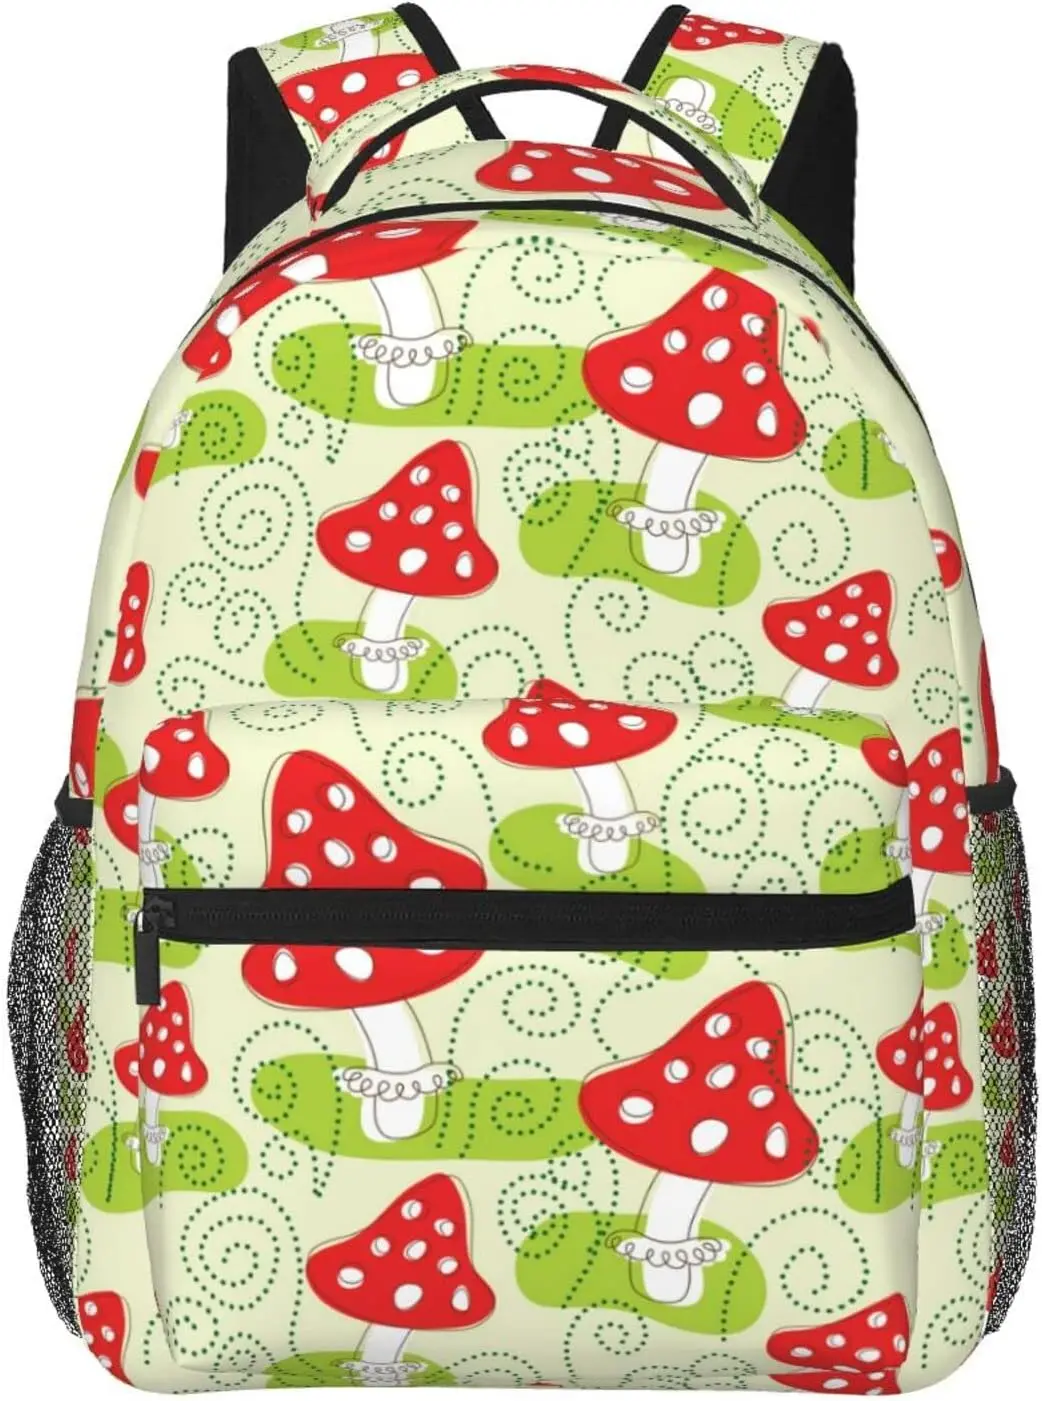 

Mushroom Backpack Adjustable Shoulder Strap Bookbag Casual Daypack Lightweight Backpack for Adults